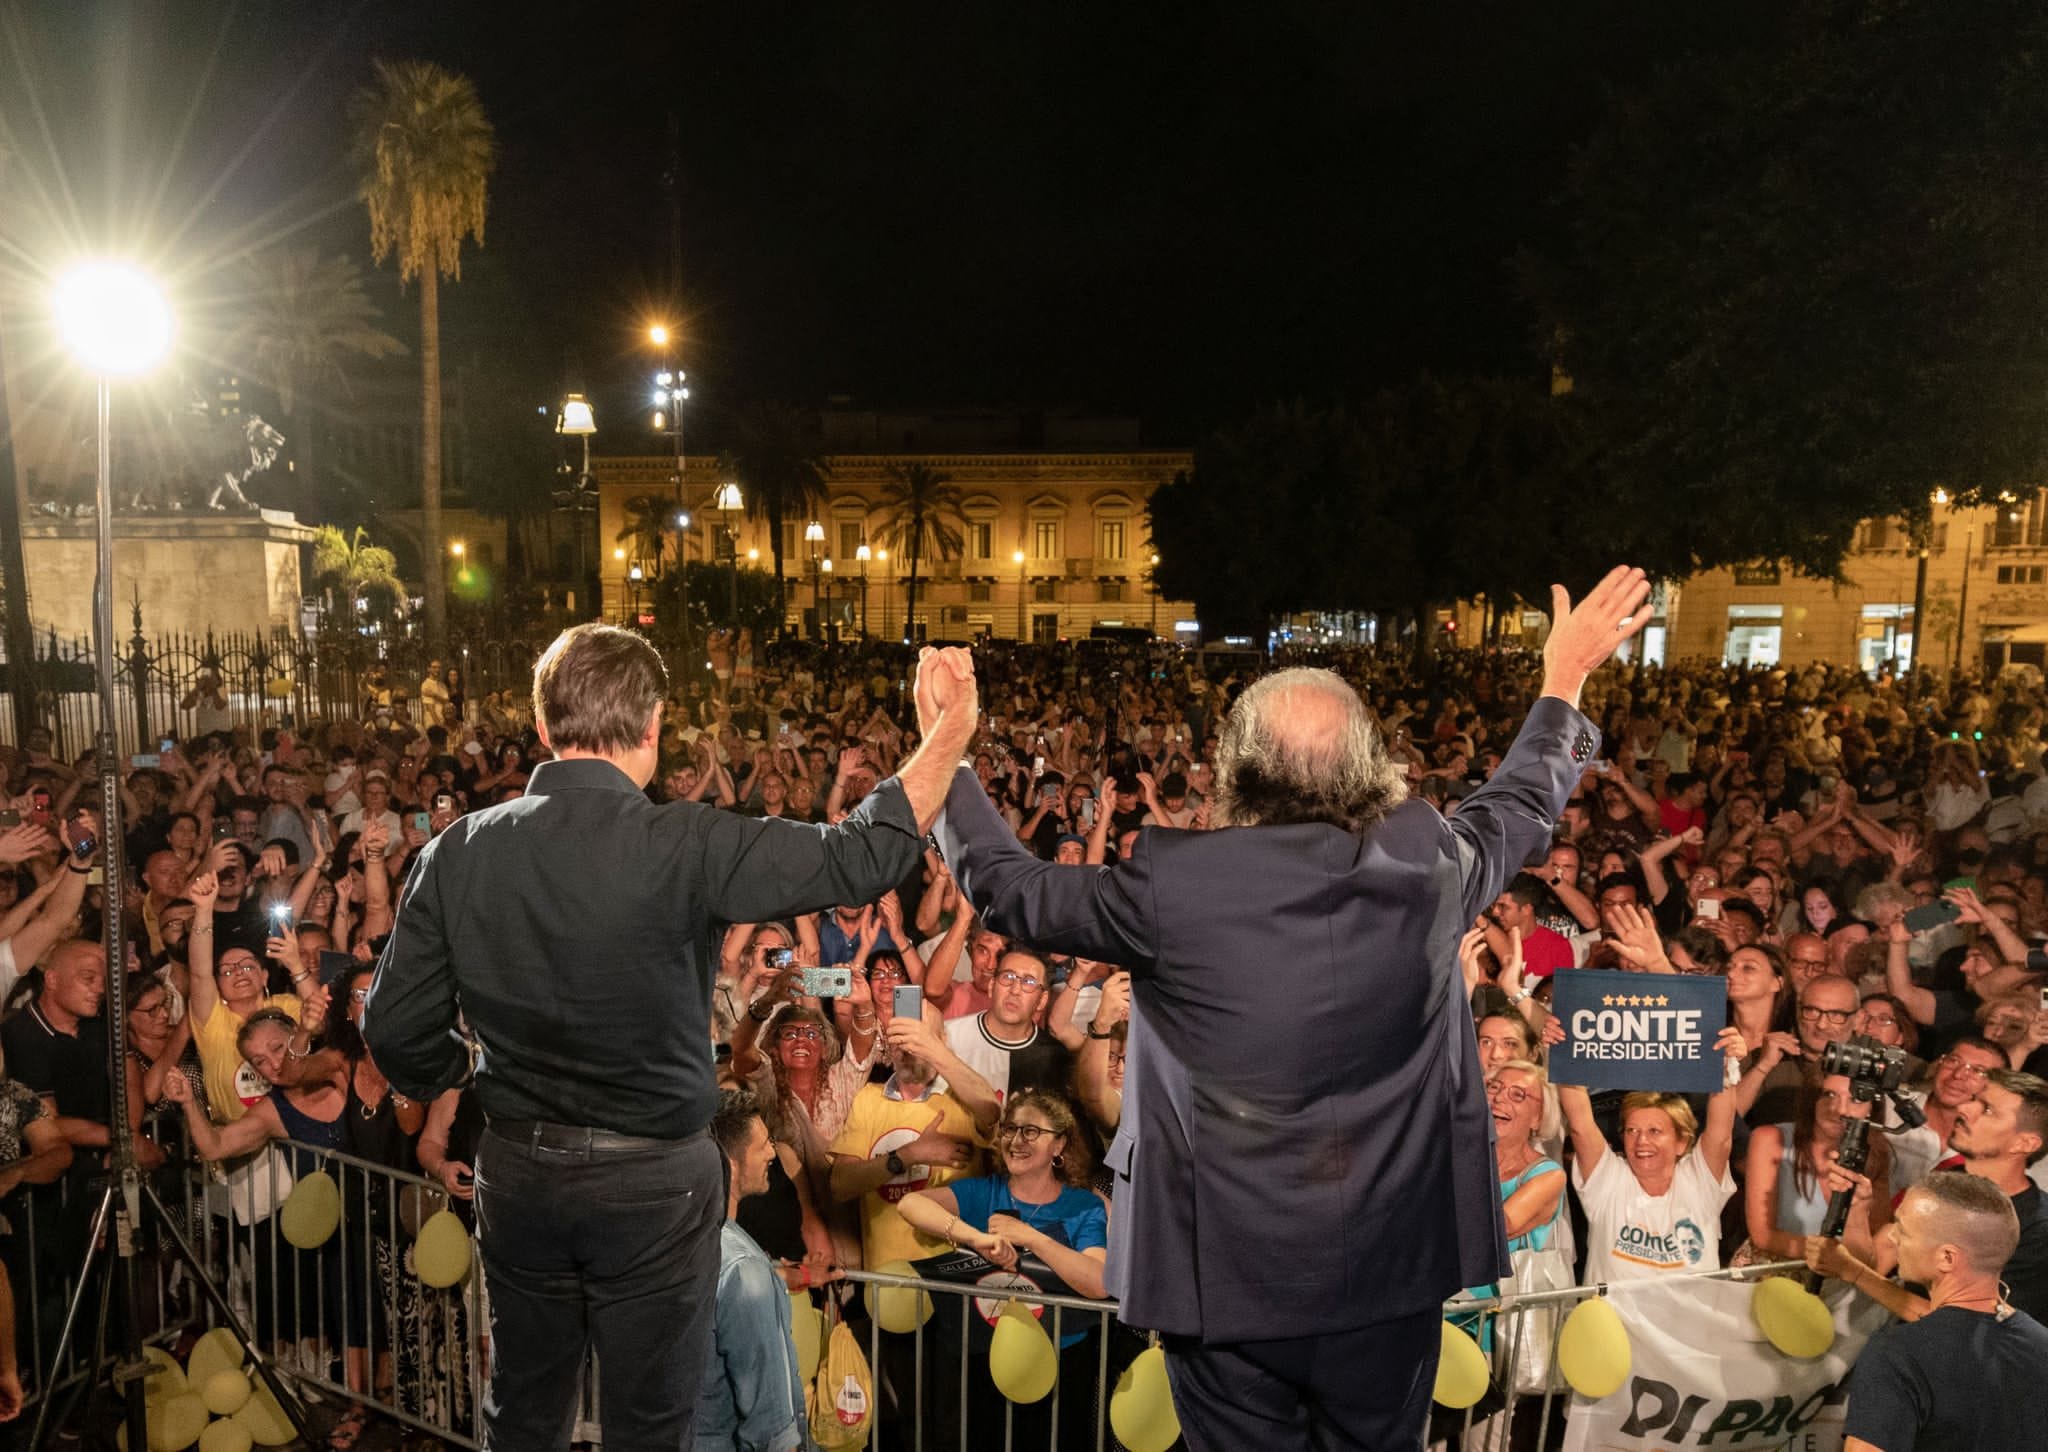 Elezioni 2022. Conte (M5S)dopo la tre giorni in Sicilia: “Da qui è partita l’onda M5S e da qui riparte ora”. Di Paola (M5S): “Se i numeri delle piazze siciliane fossero voti, avremmo già vinto”